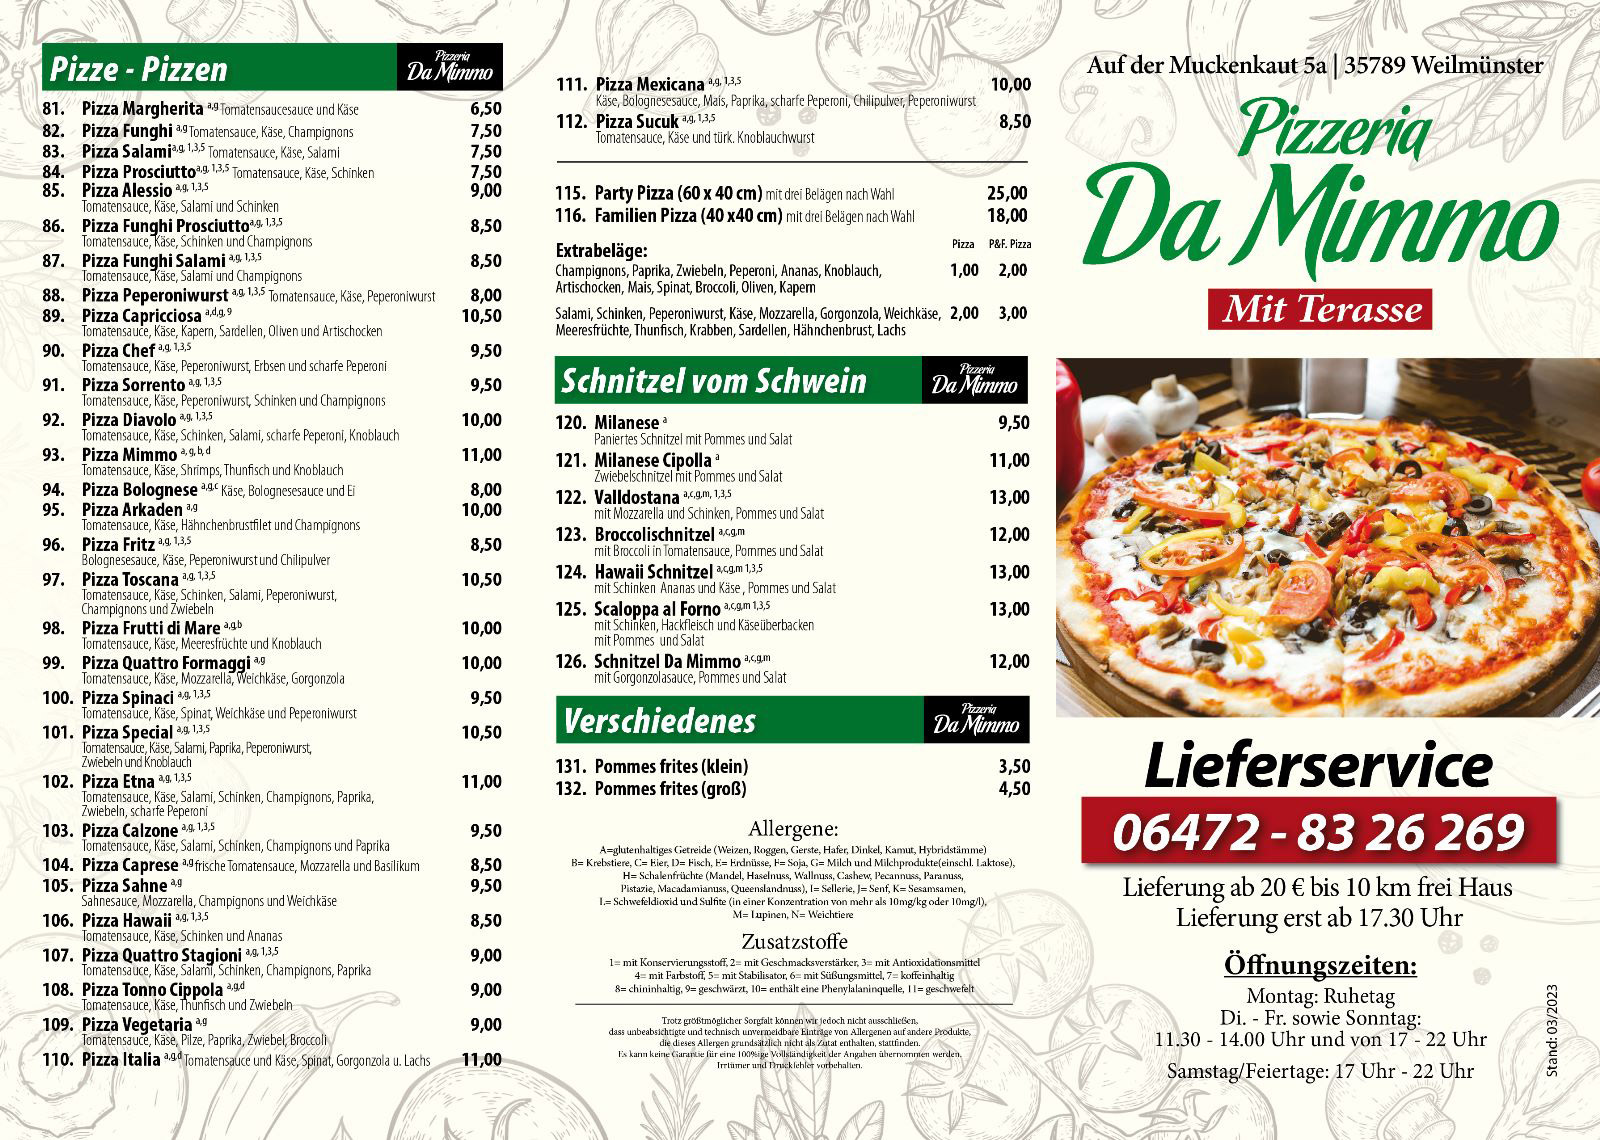 wlmAktiv DaMimmo Pizzeria und Lieferservice Karte Aussenseite Stand 03/2023